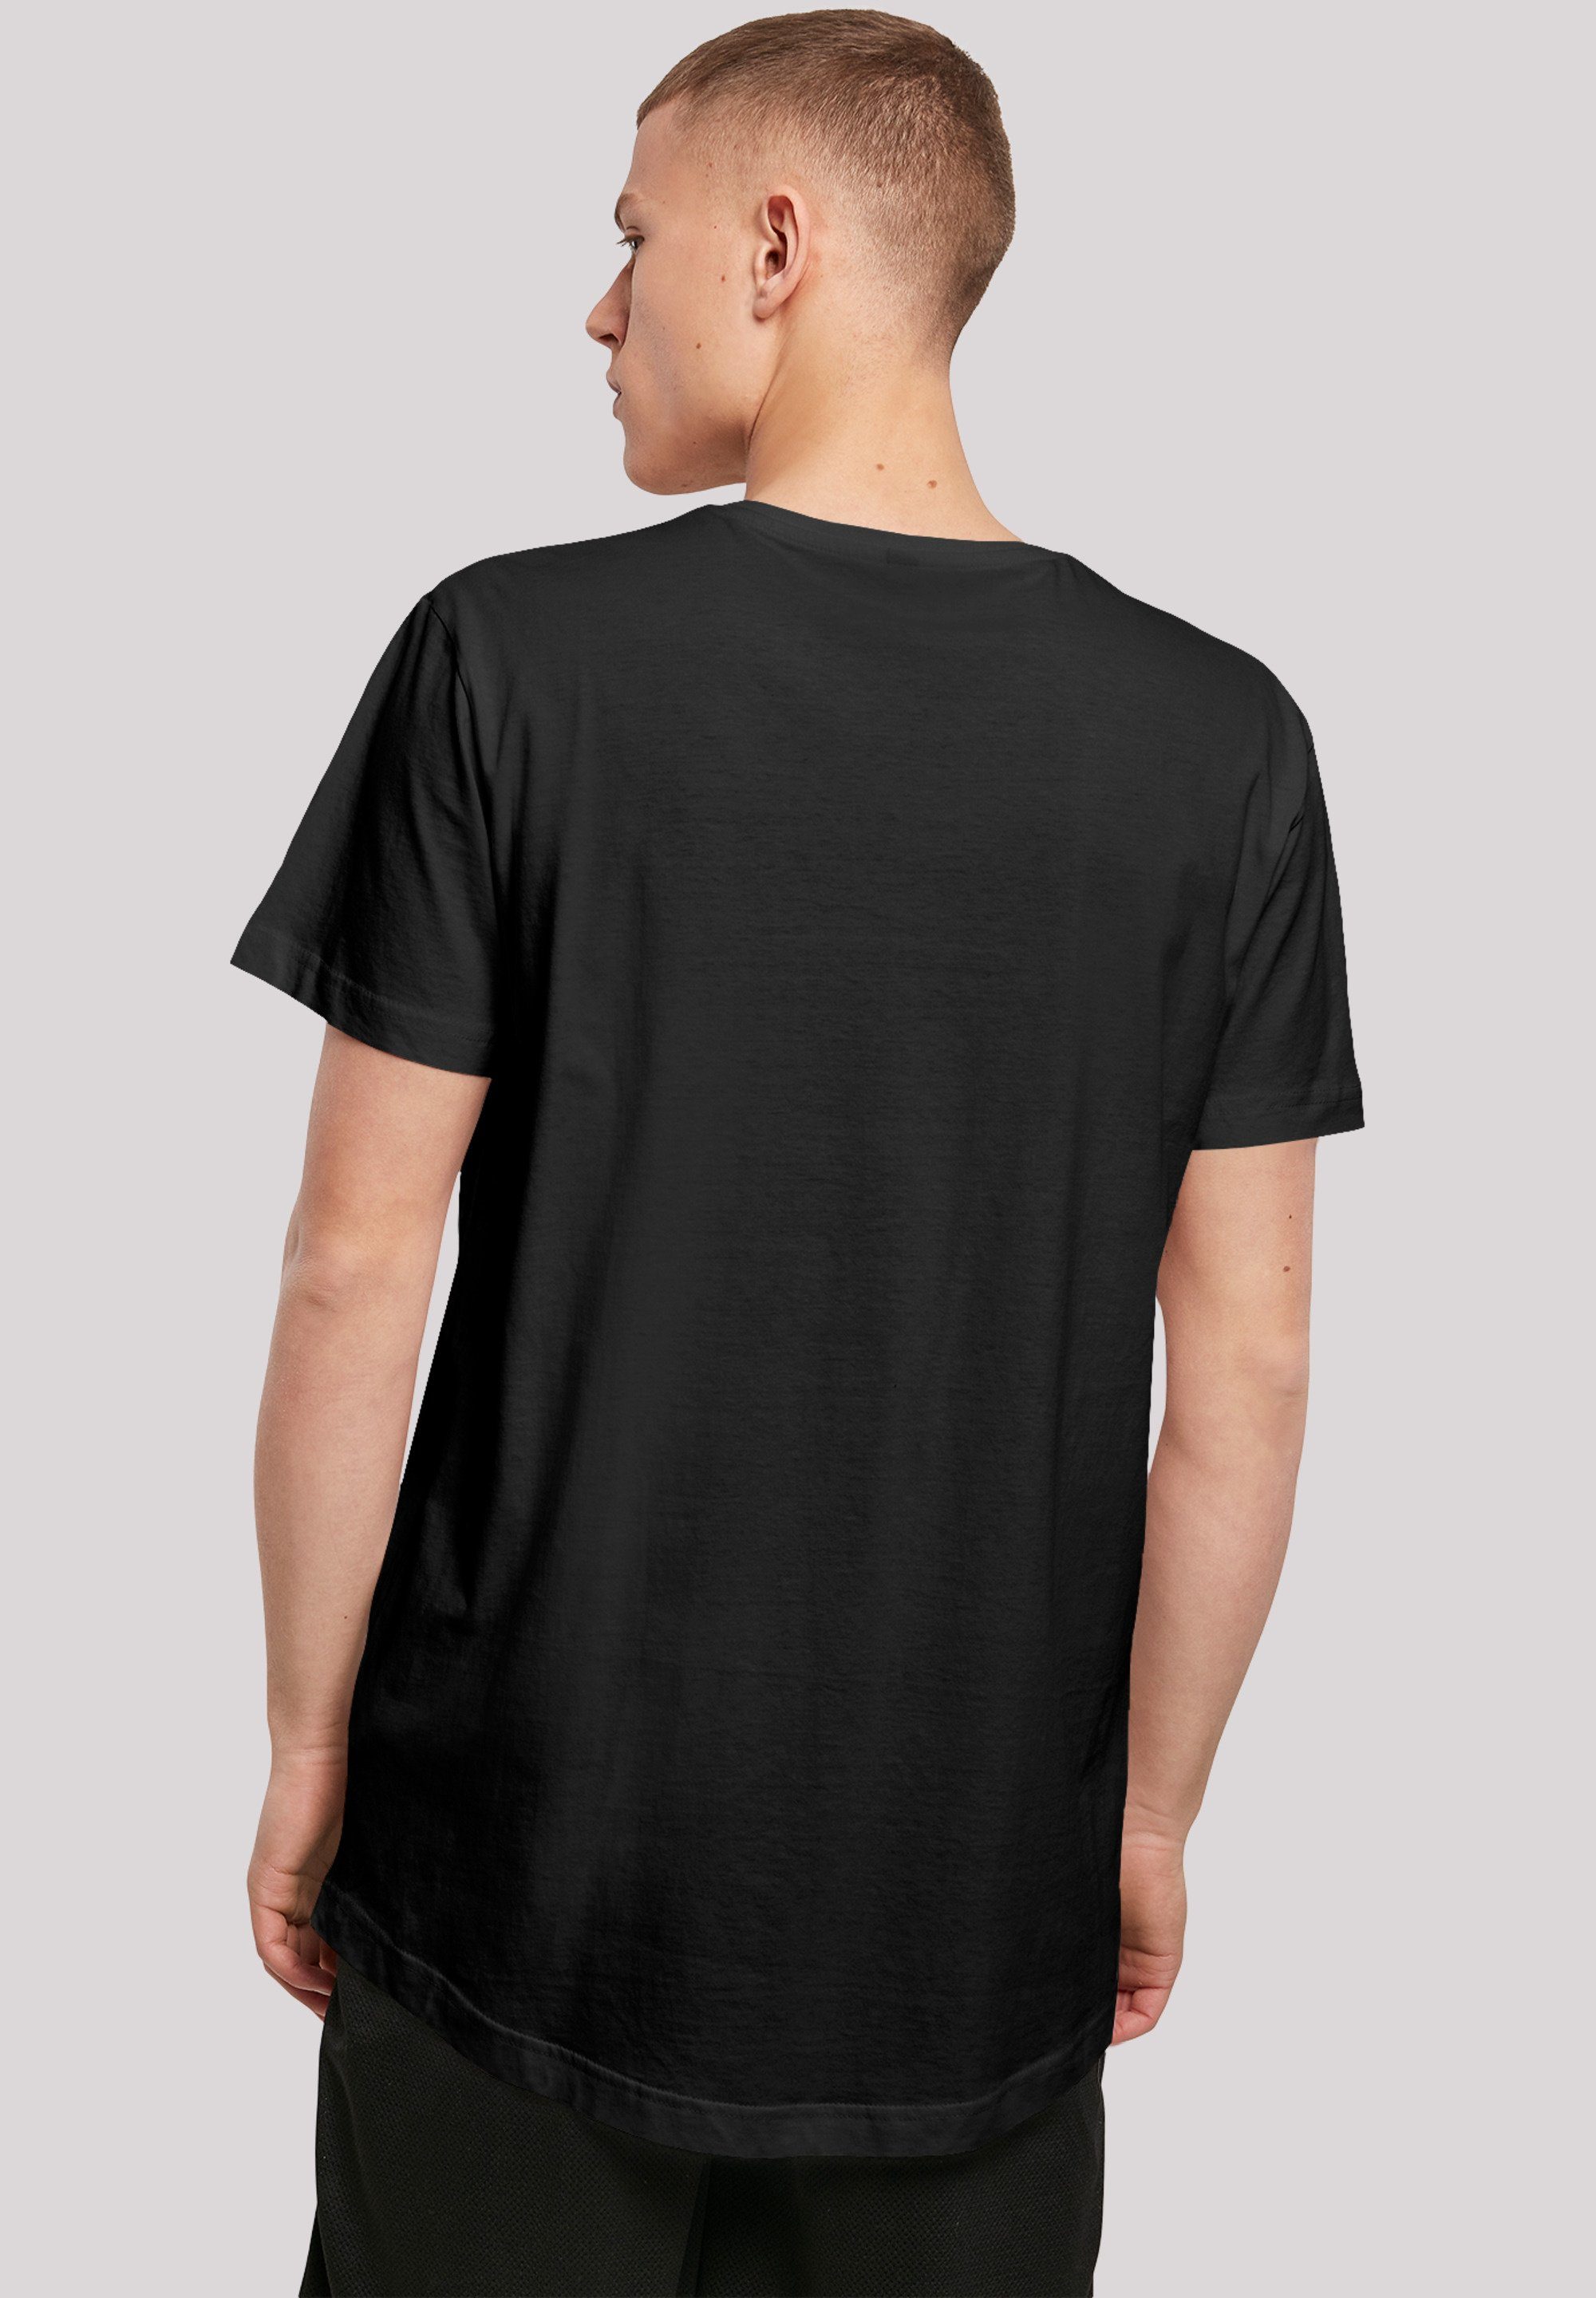 F4NT4STIC T-Shirt Long Cut Print Are 'Big Shirt Here' Bang Theory You